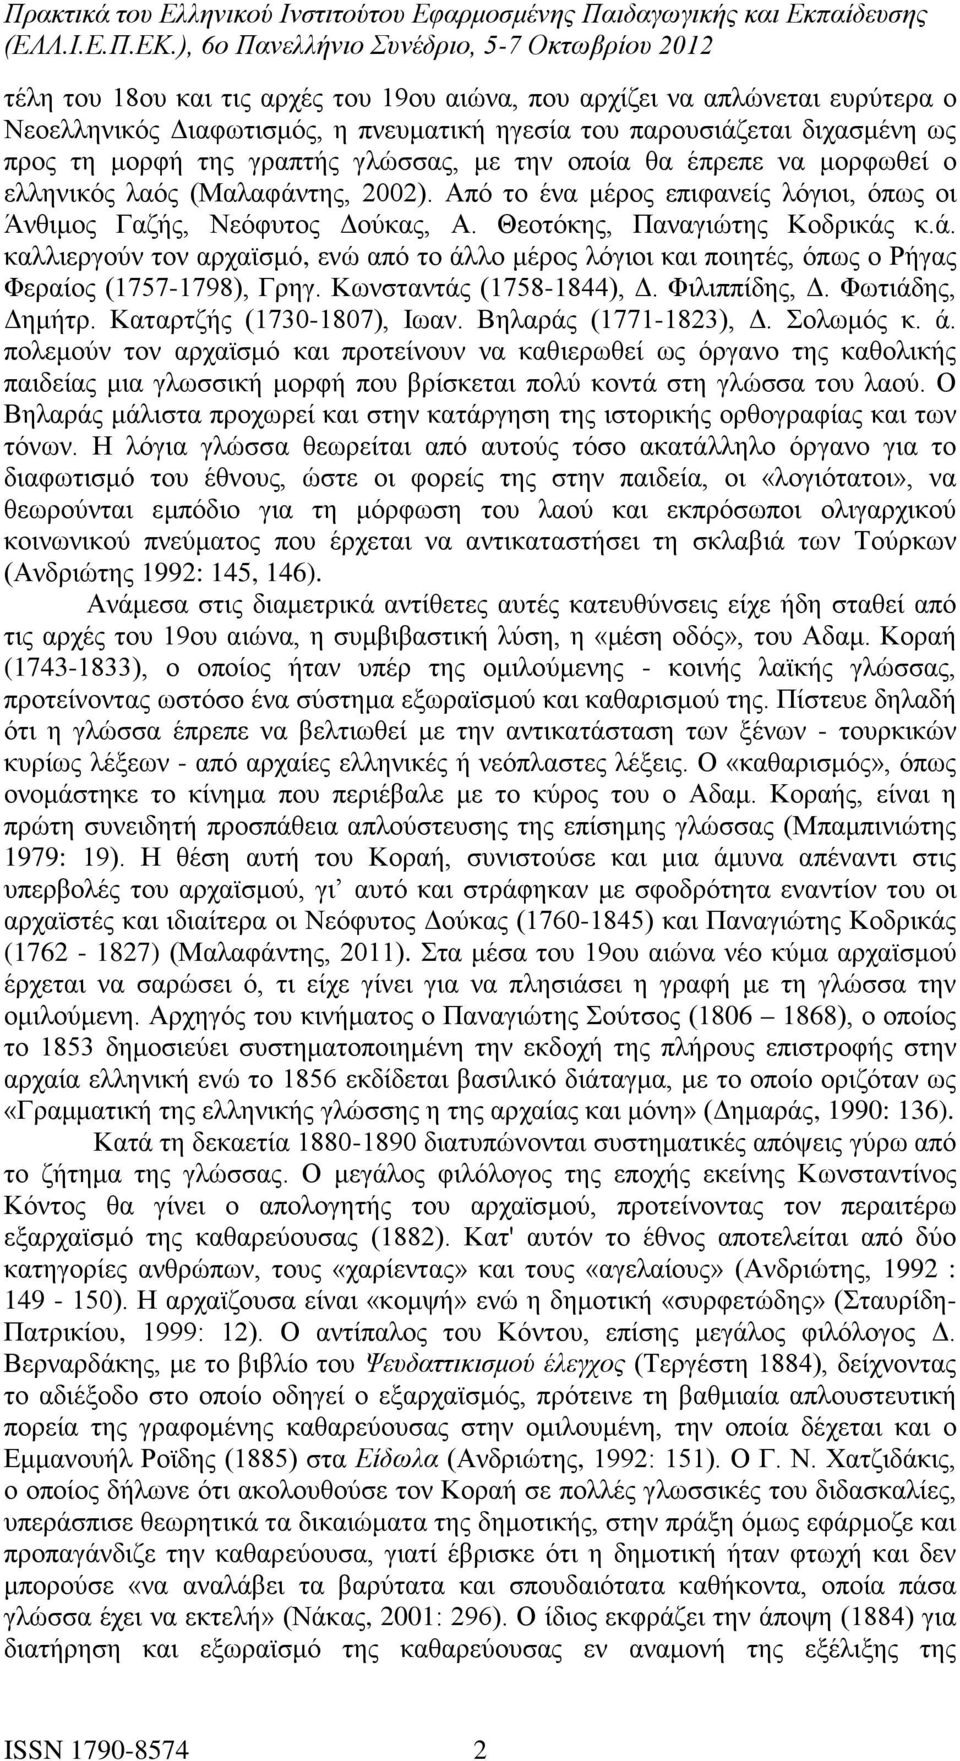 Κωνσταντάς (1758-1844), Δ. Φιλιππίδης, Δ. Φωτιάδης, Δημήτρ. Καταρτζής (1730-1807), Ιωαν. Βηλαράς (1771-1823), Δ. Σολωμός κ. ά.